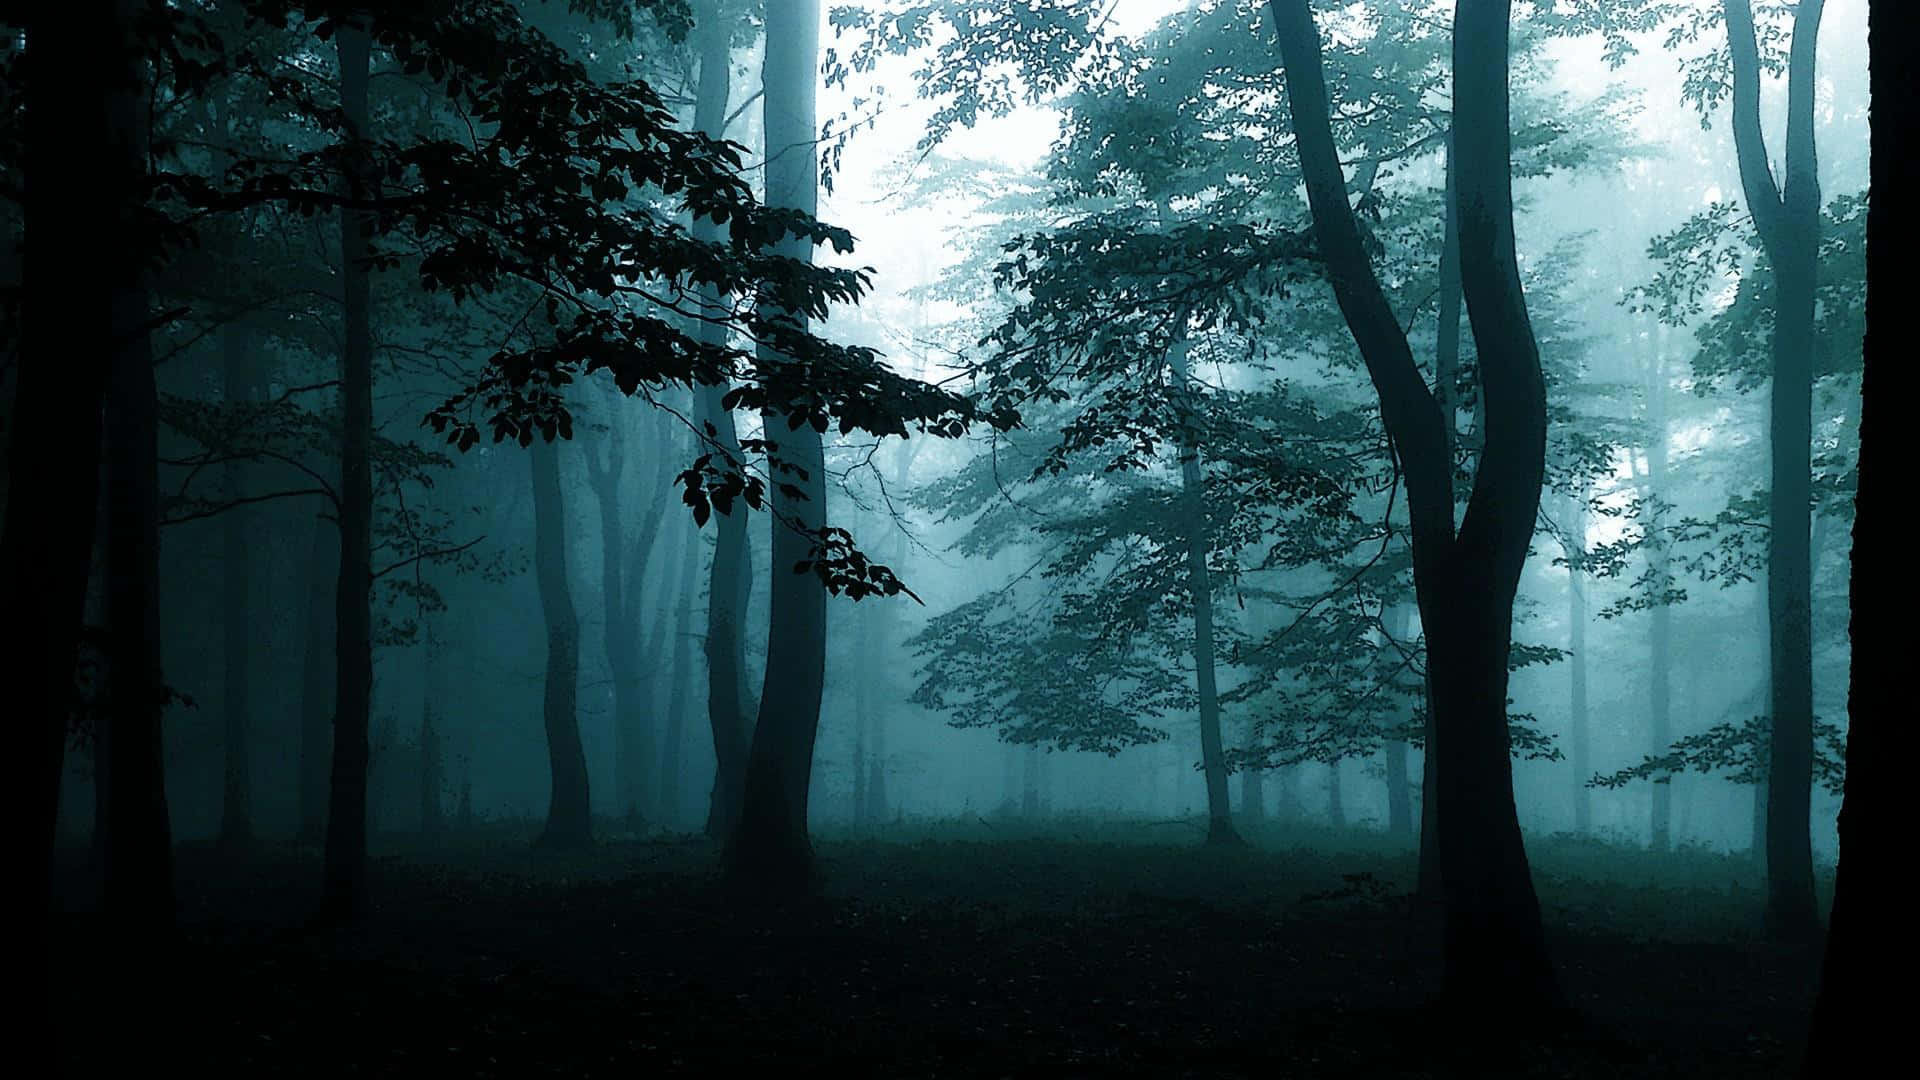 Schön,geheimnisvoll Und Ruhig - Dieser Hintergrund Des Dunklen Waldes Fängt Die Anziehungskraft Der Natur Ein.